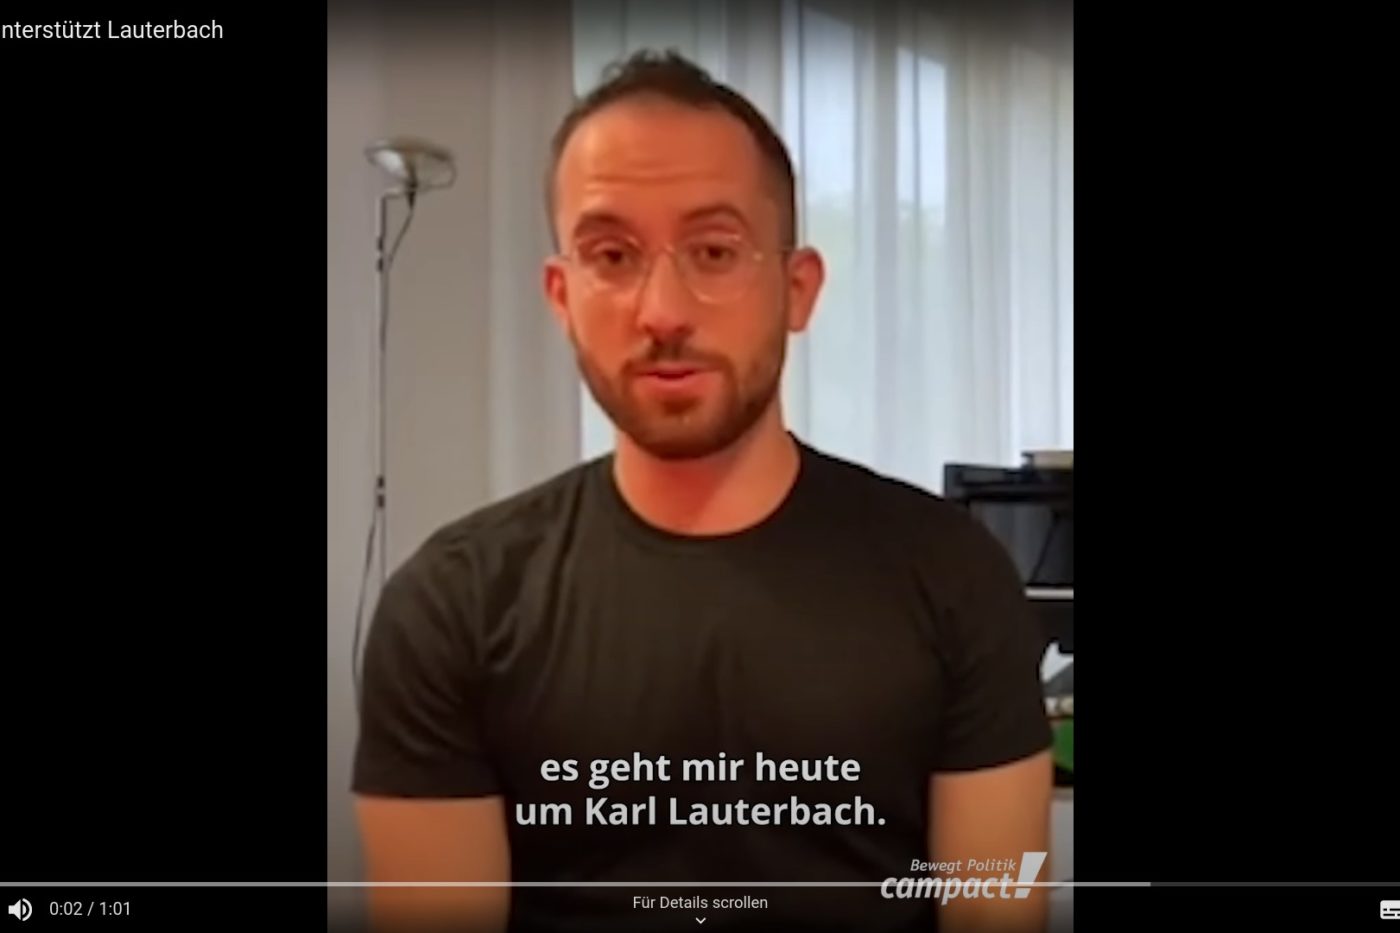 Screenshot aus dem Video "Igor Levit unterstützt Lauterbach". Igor Levit spricht in die Kamera